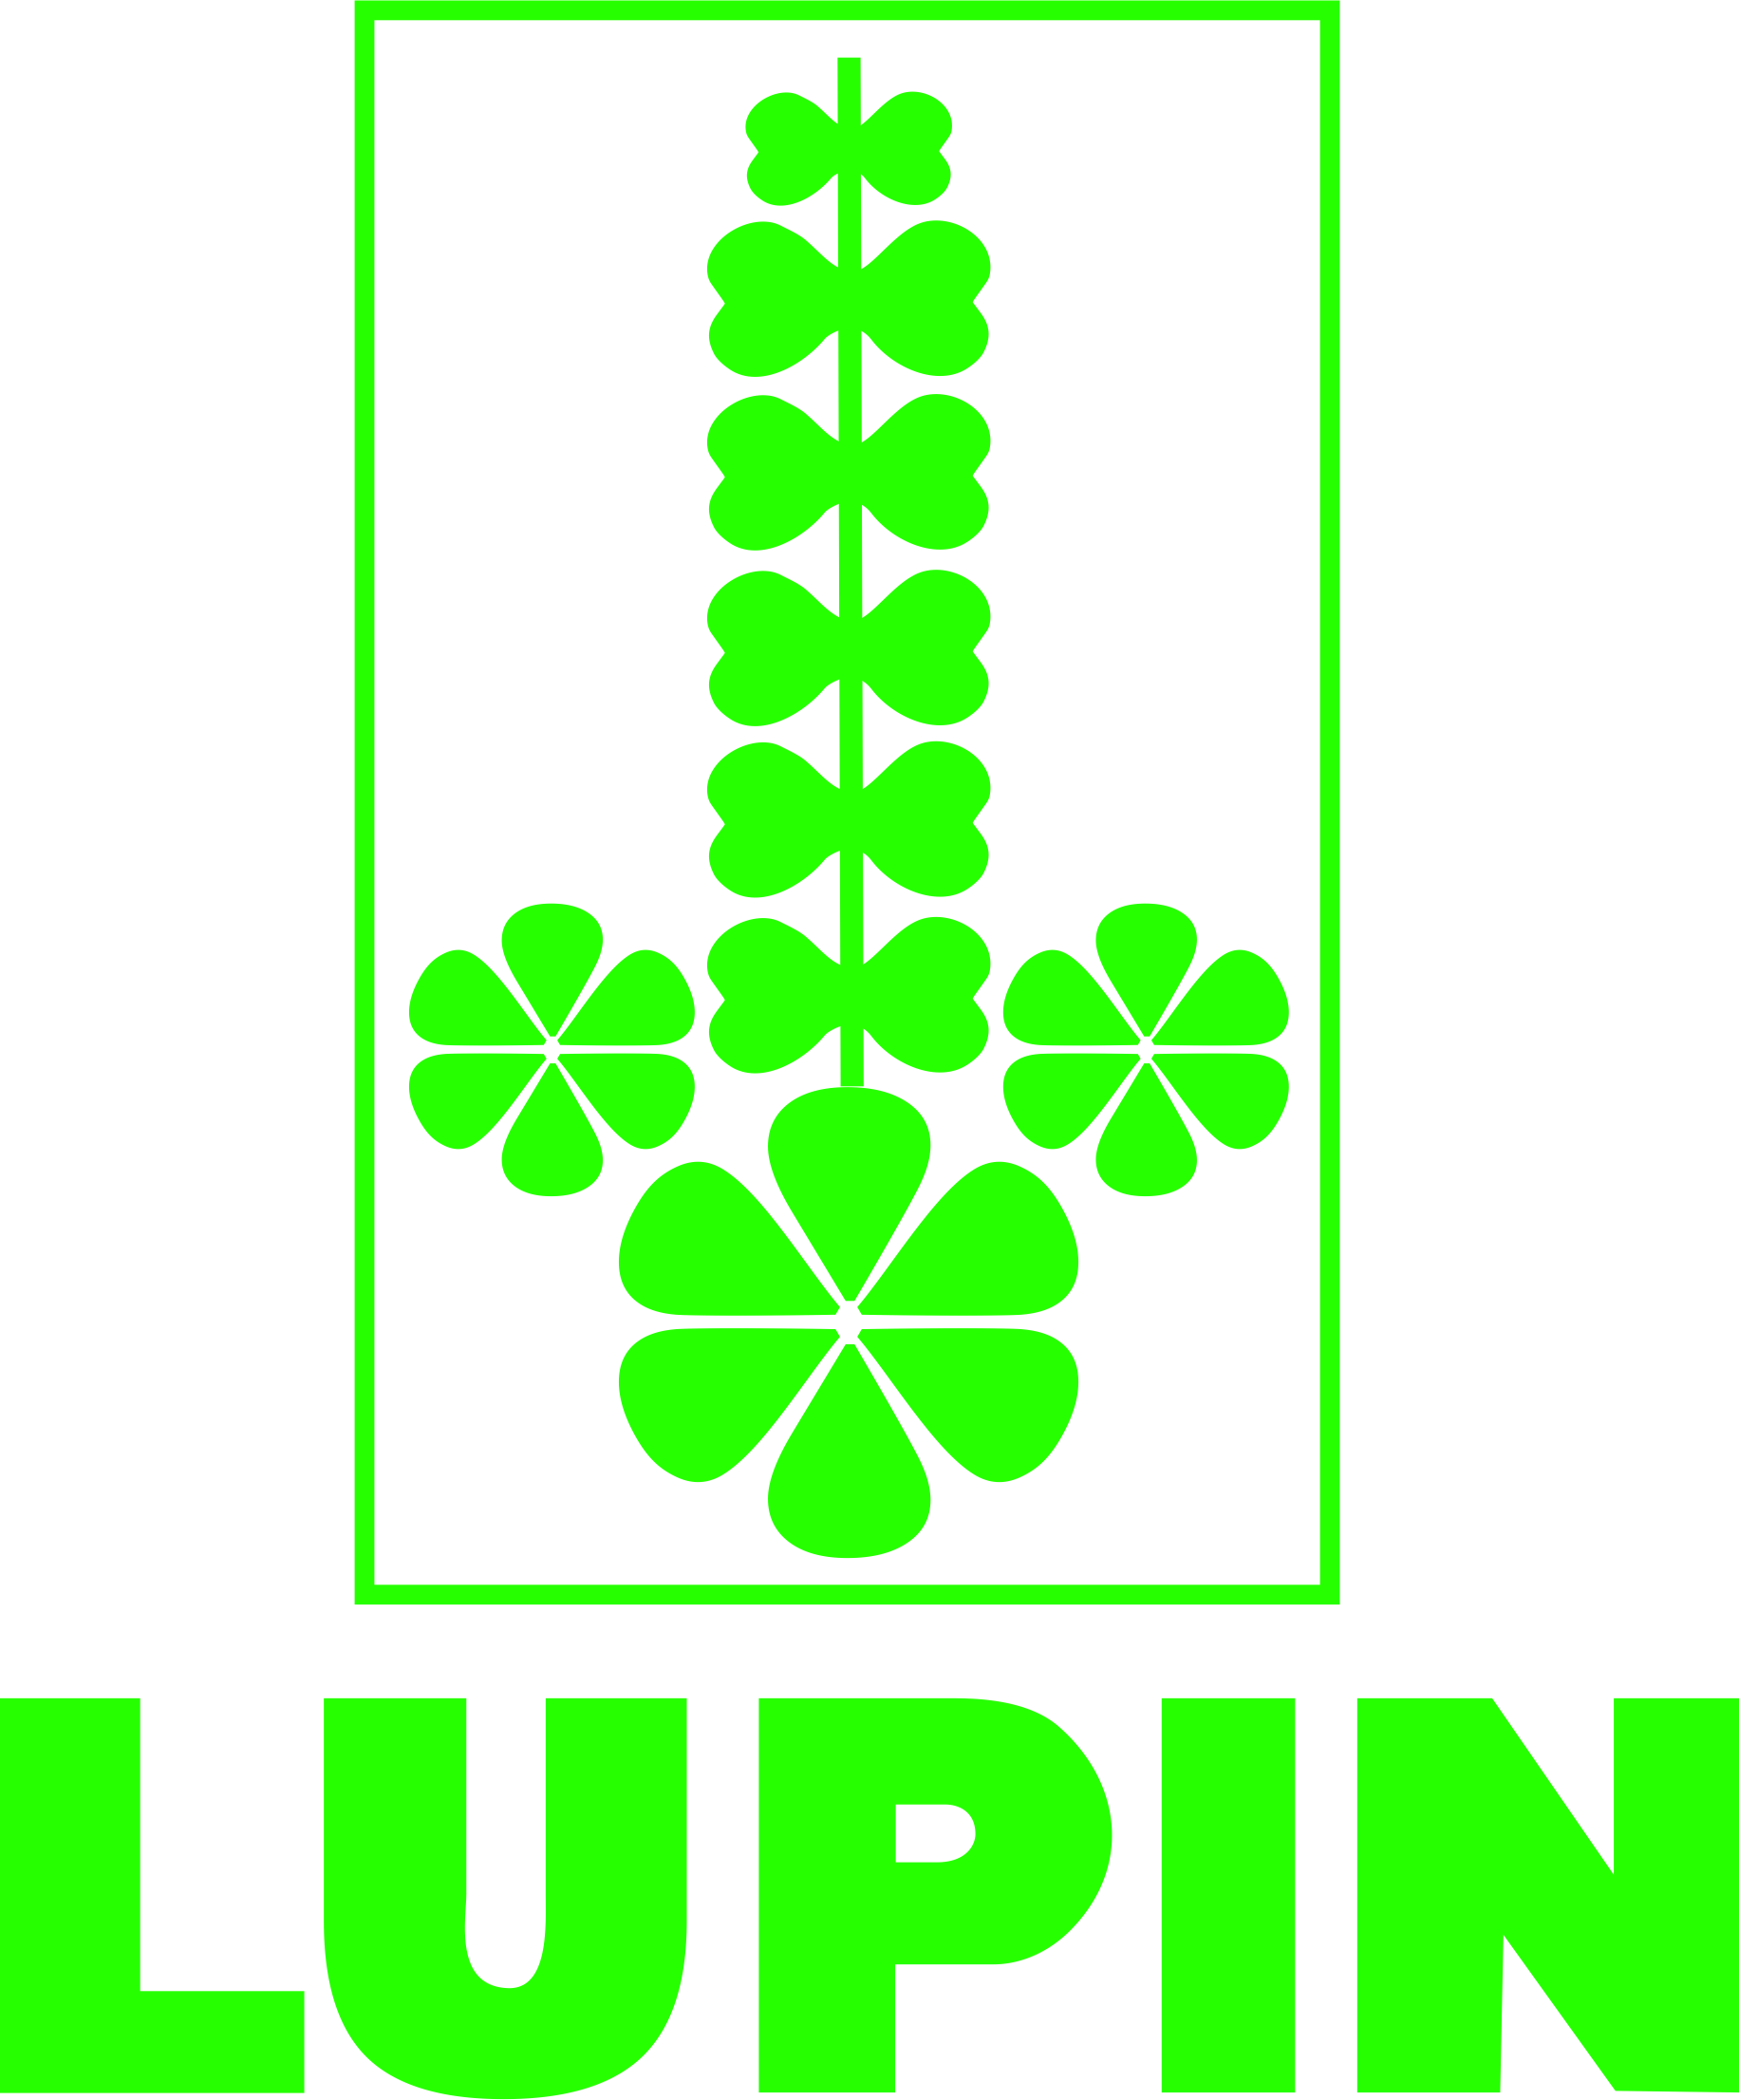 lupin logo.jpg